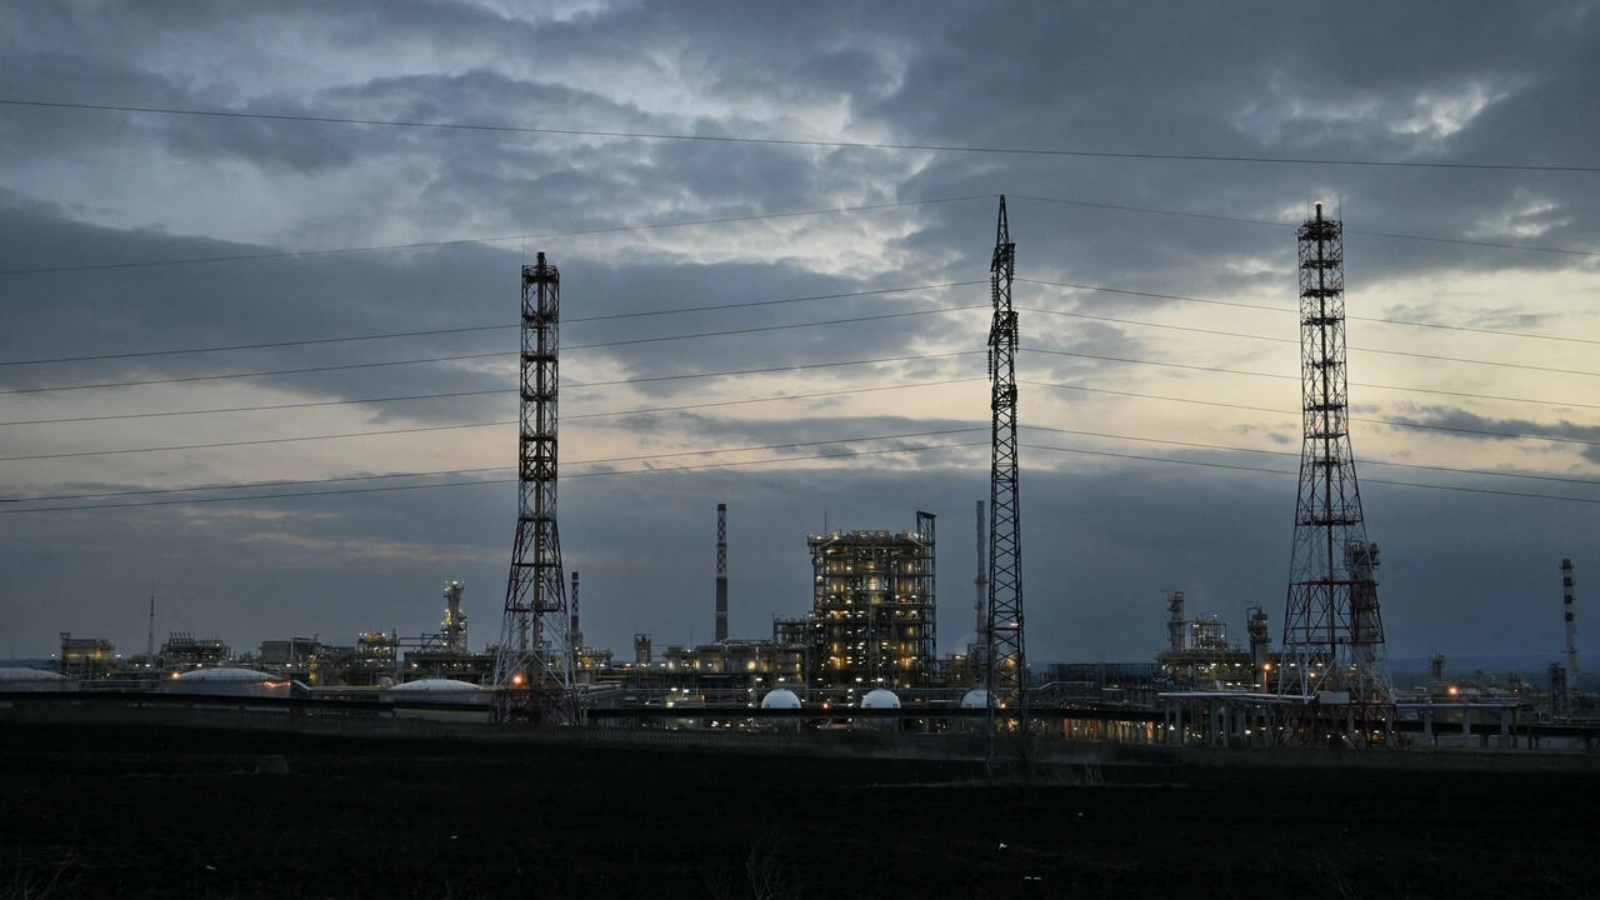 مصفاة النفط الوحيدة في بلغاريا، لوك أويل نفطوتشيم بورغاس الروسية، بالقرب من مدينة بورغاس على ساحل البحر الأسود في 17 مارس 2022.